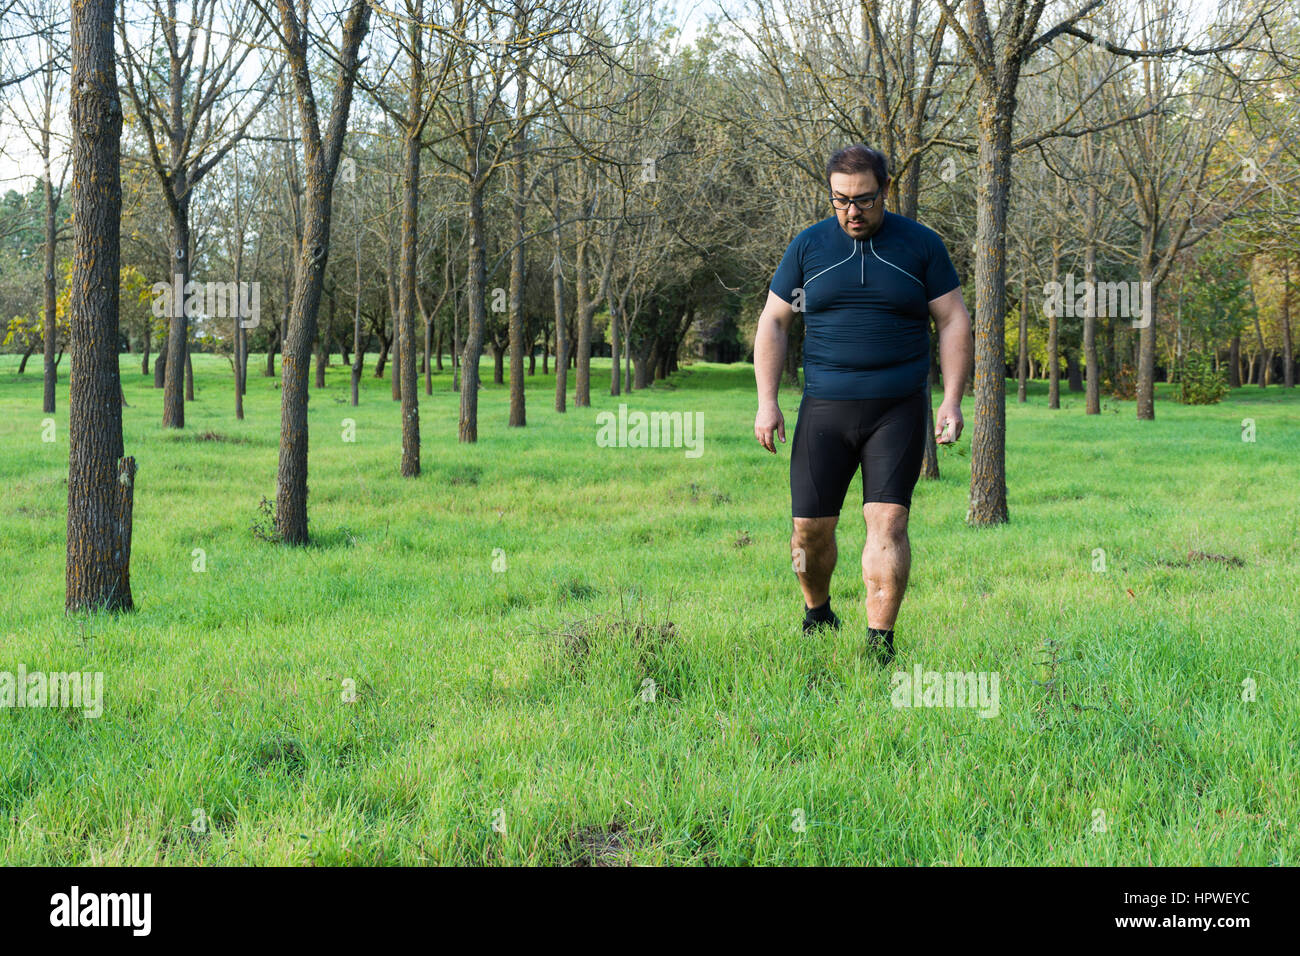 Dicken Bauch Mann Joggen, Sport treiben, tun, Cardio im Park, leicht übergewichtig, Gewicht zu verlieren. Auf einer Wiese grüne Gras zwischen den Bäumen ohne lea Stockfoto